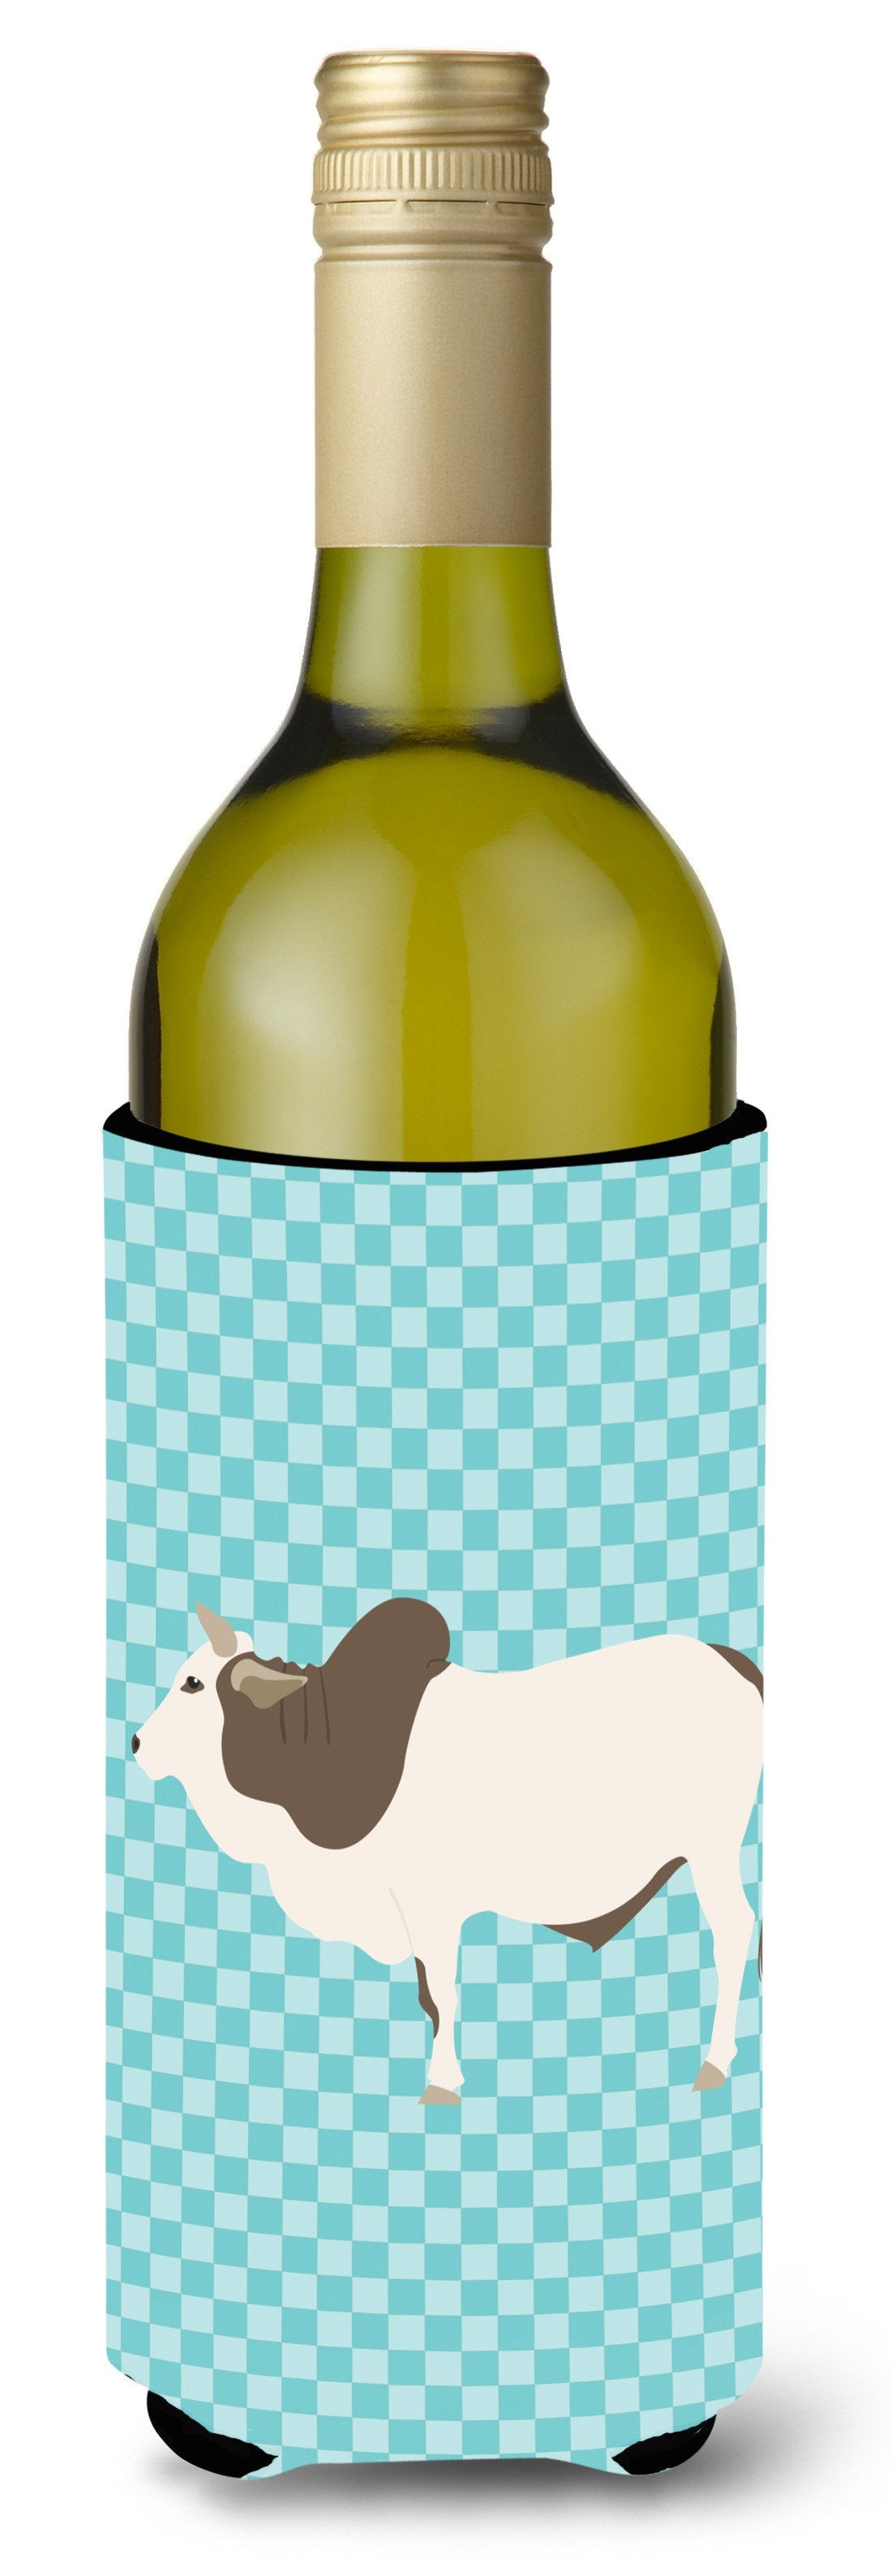 Malvi Cow Blue Check Wine Bottle Beverge Insulator Hugger BB8004LITERK by Caroline's Treasures